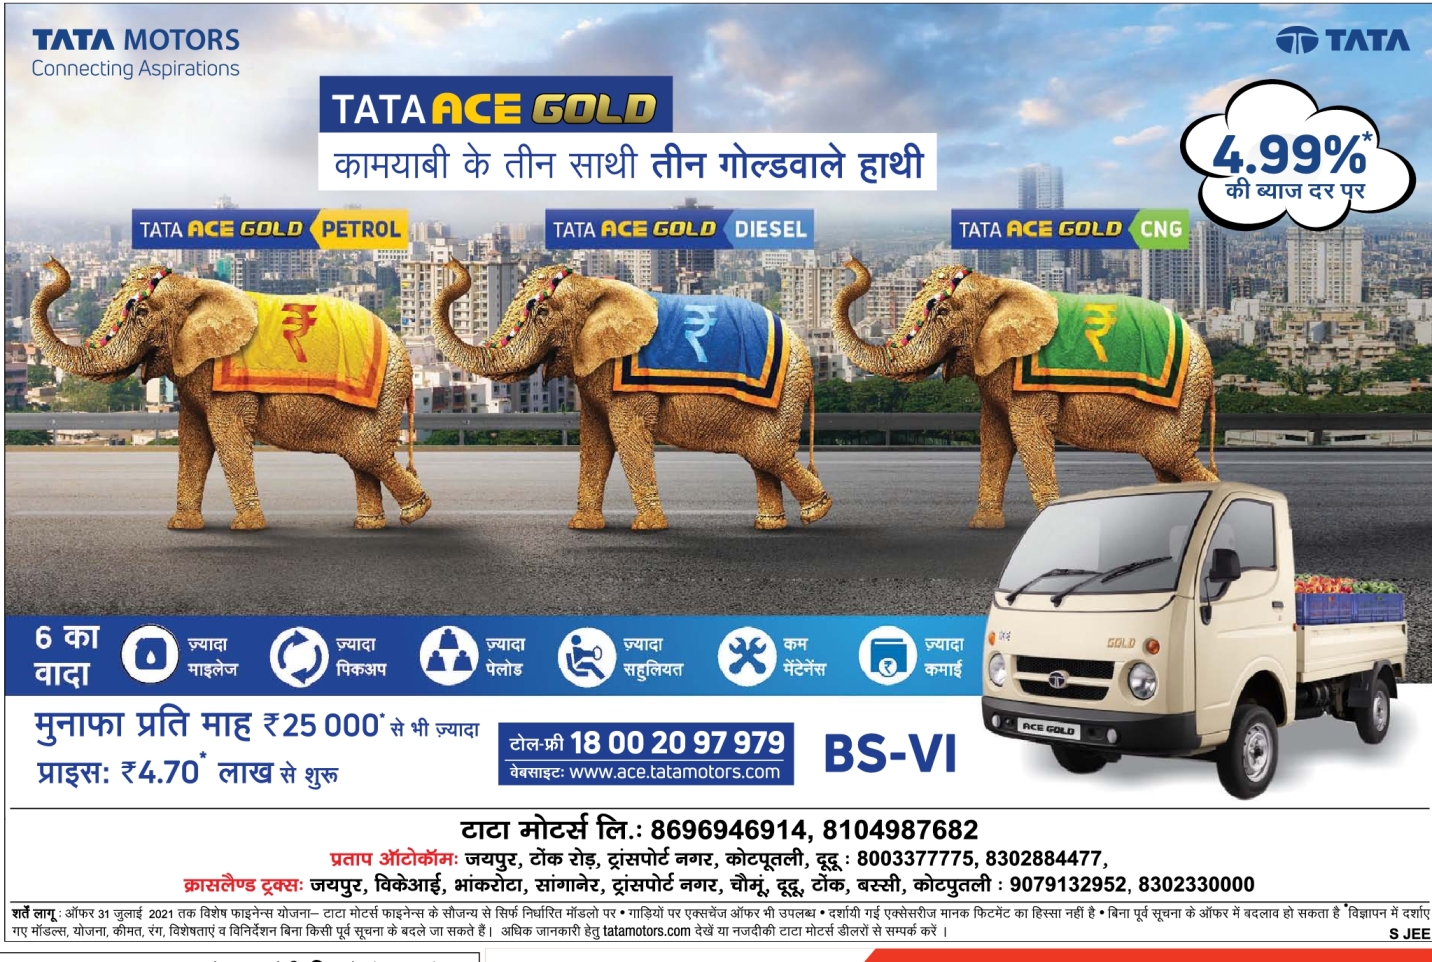 Tata Motors Advertisements in Newspapers - Advert Gallery